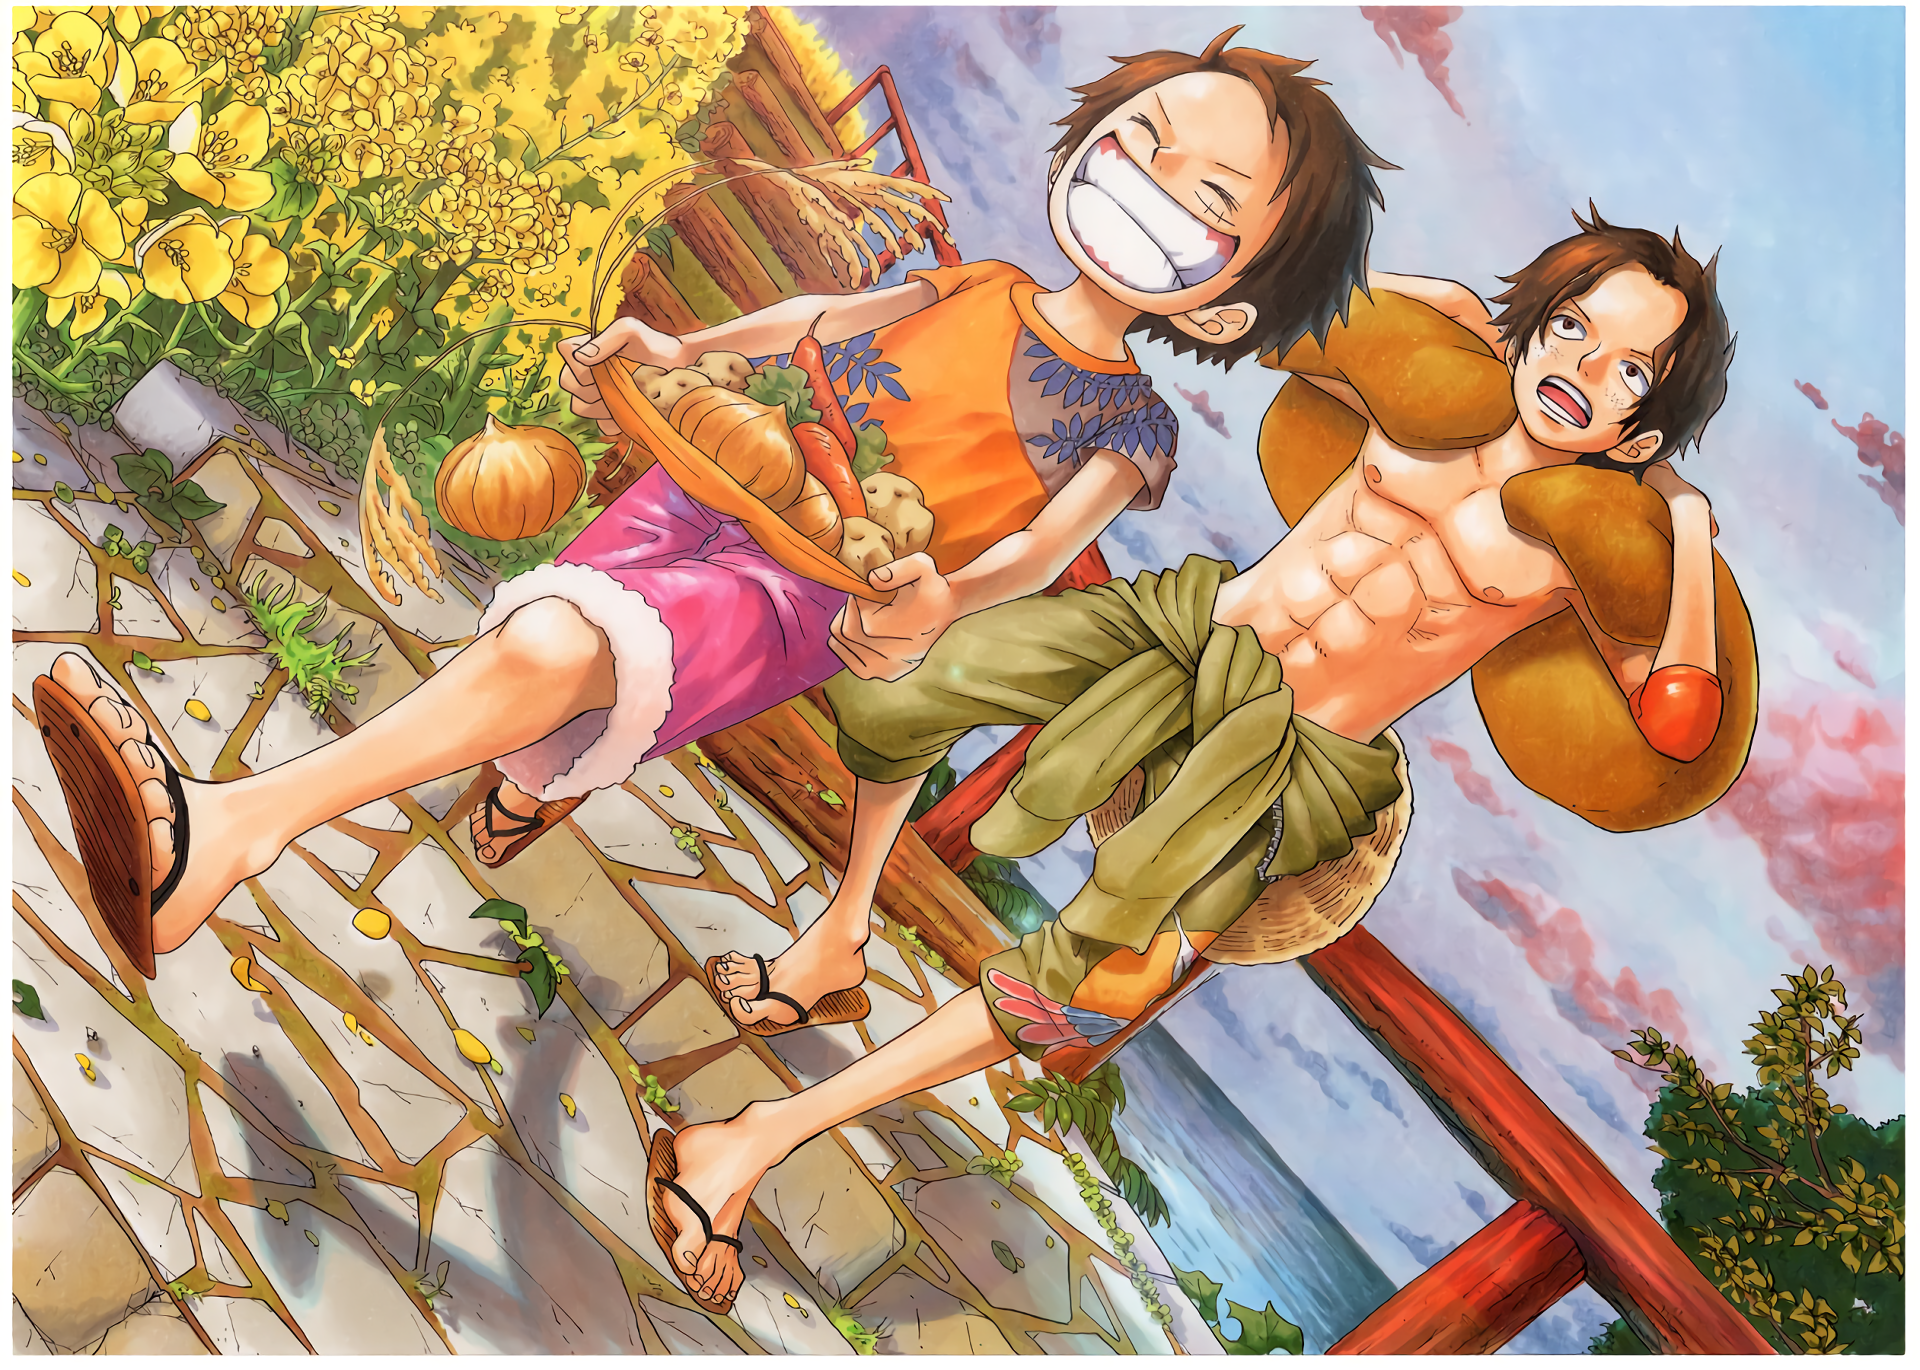 One Piece là một trong những bộ anime huyền thoại, với một thế giới rộng lớn đầy sắc màu và các nhân vật phong phú đa dạng, từ những người hùng dũng cảm cho đến những kẻ xấu tàn nhẫn. Hãy theo bước chân của Luffy và đội của anh ta khi họ đứng lên chống lại những thế lực đen tối trong cuộc phiêu lưu của mình.